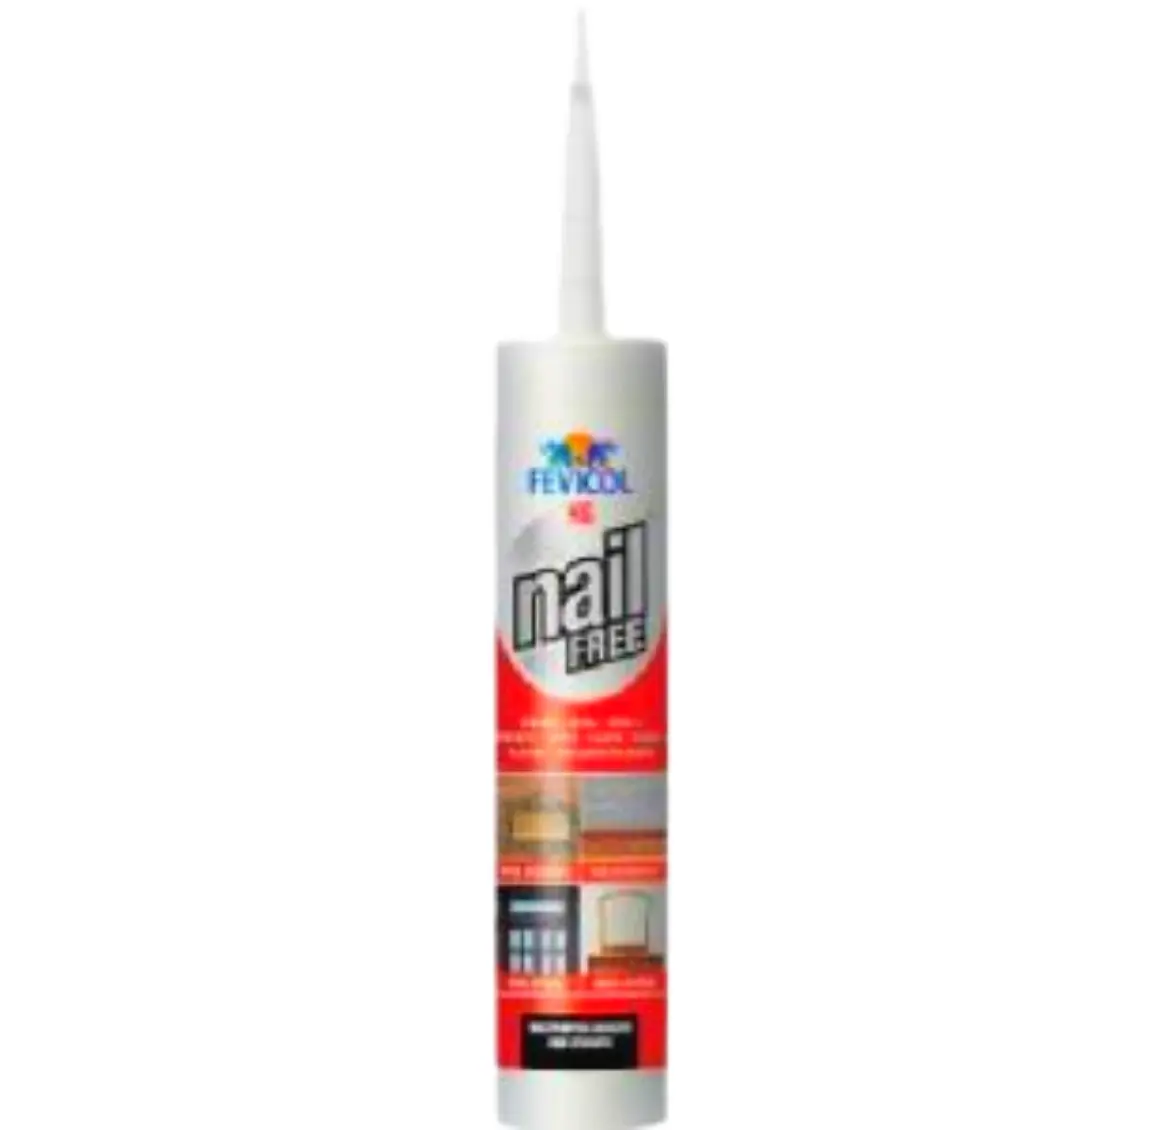 Fevicol Nail Free Ultra Construction Adhesive 320g